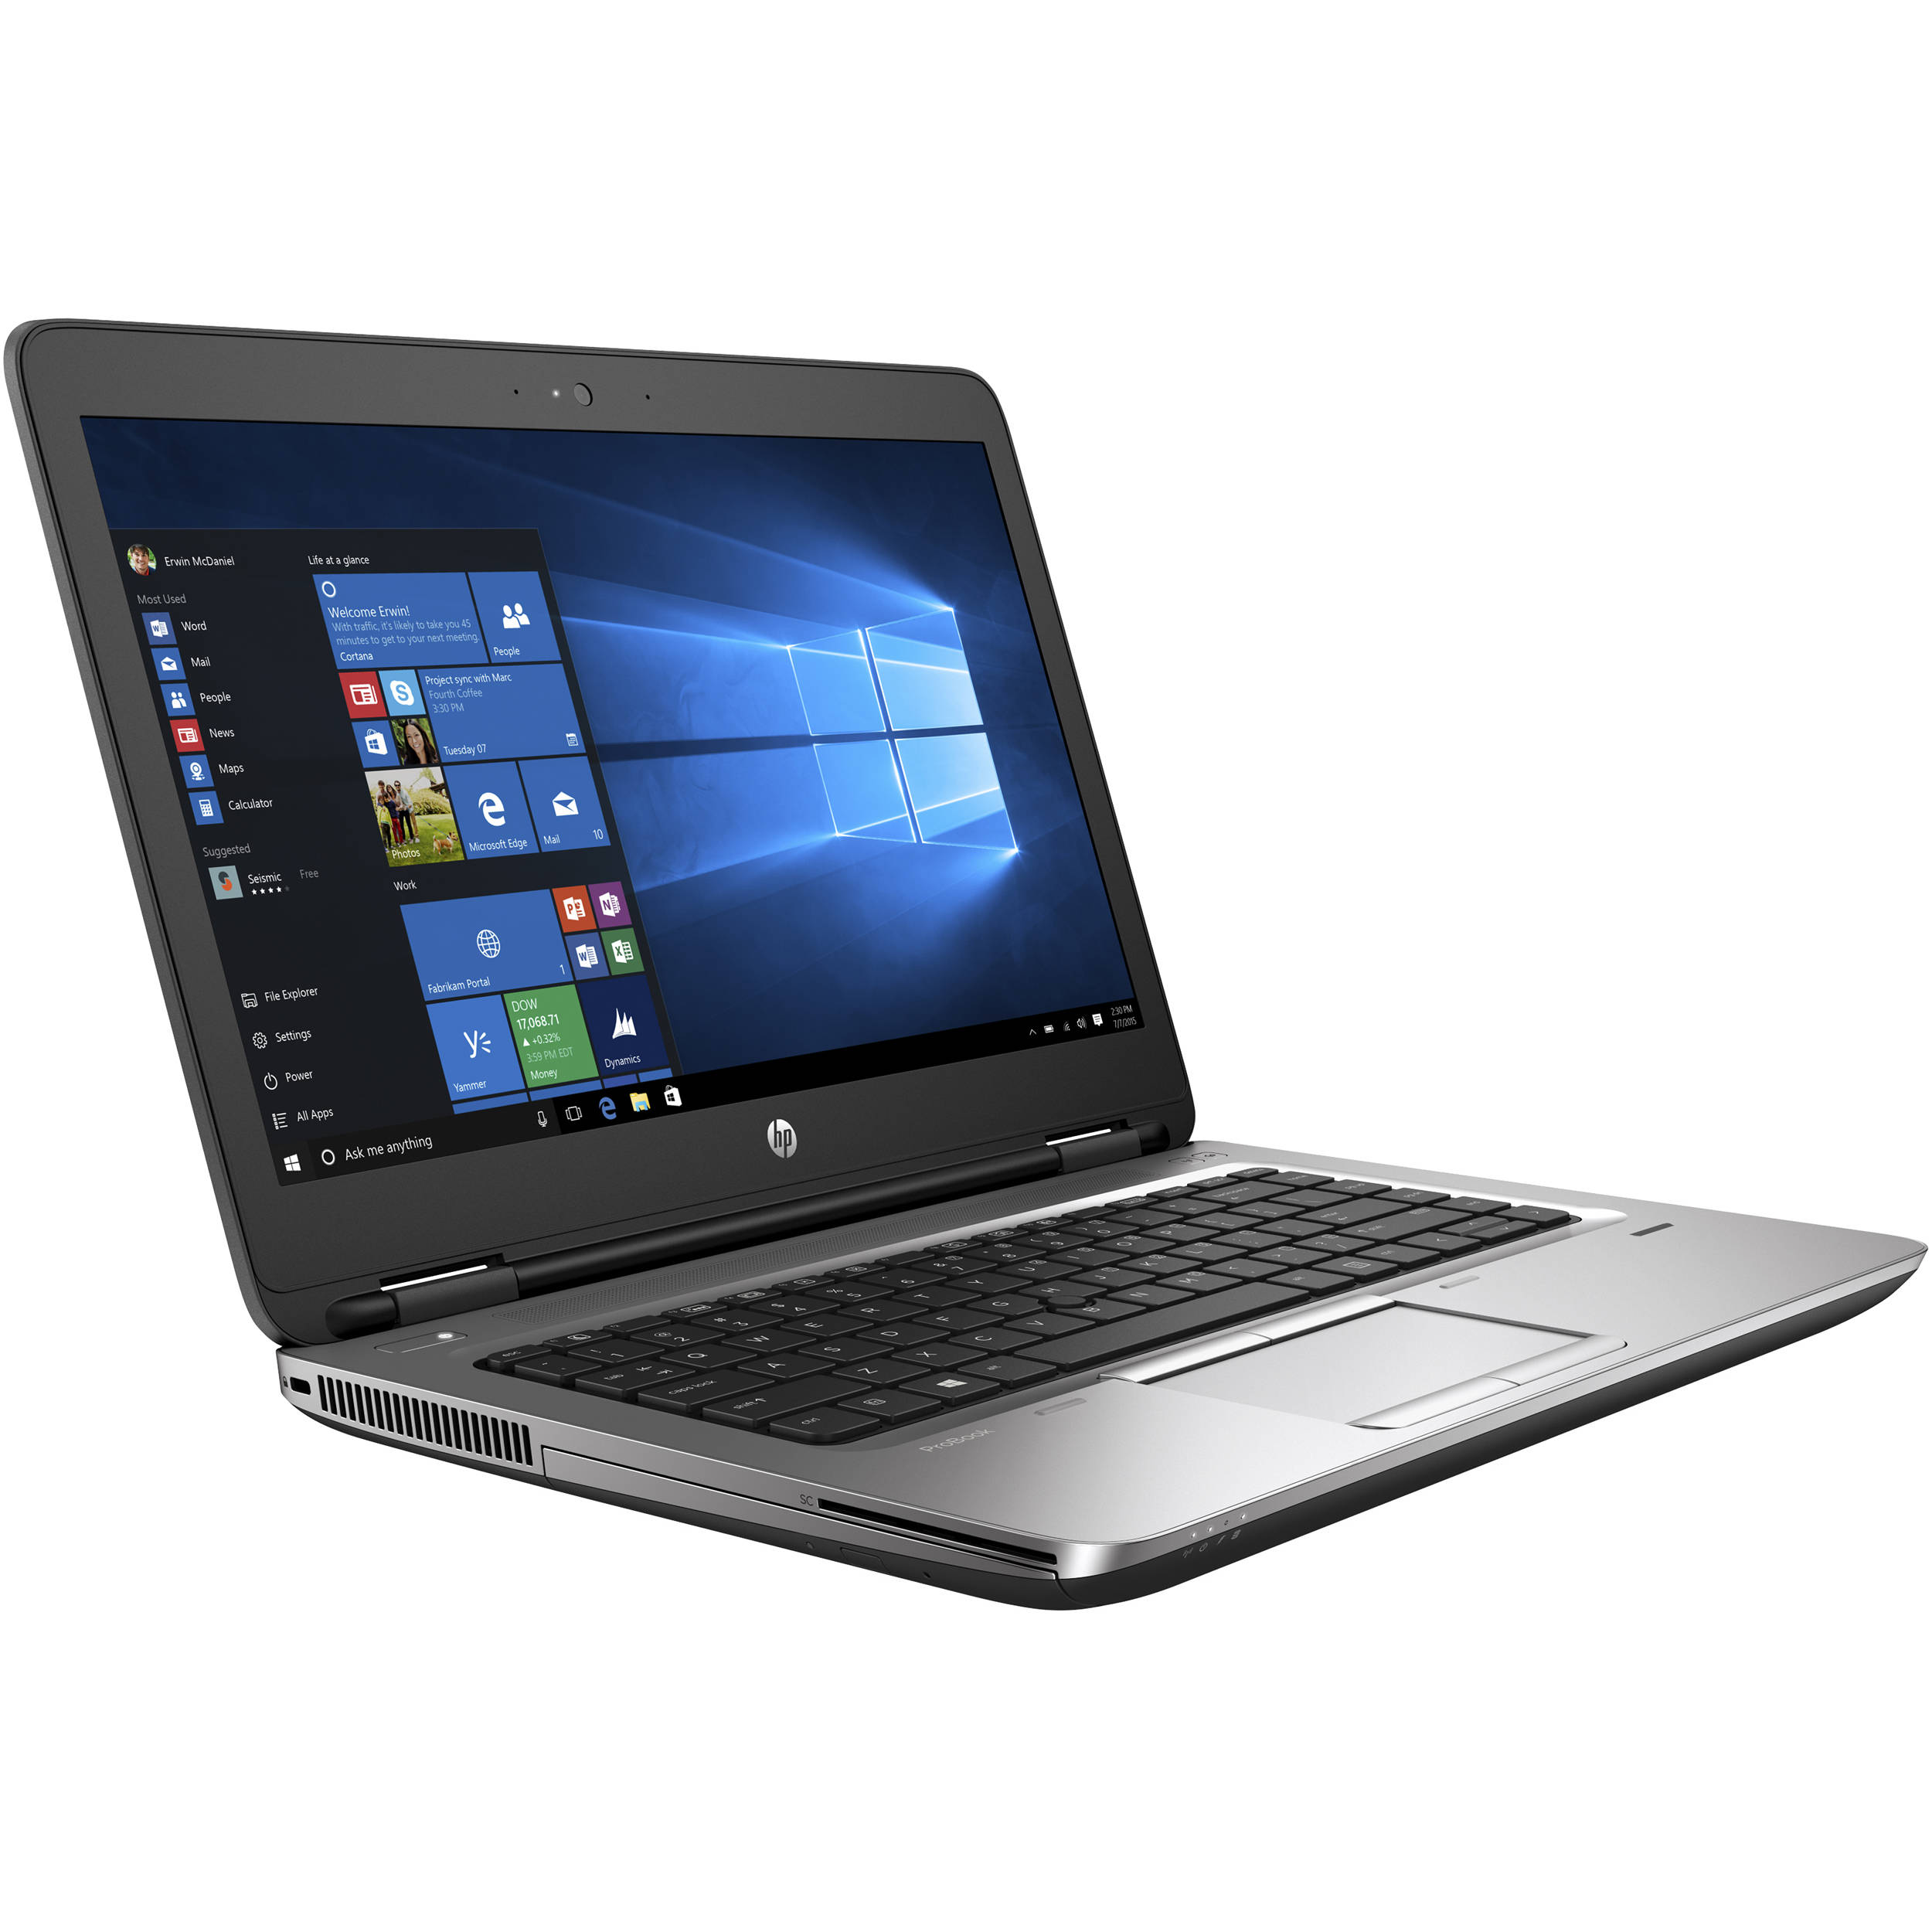 ProBook 645 G3 Notebook PC